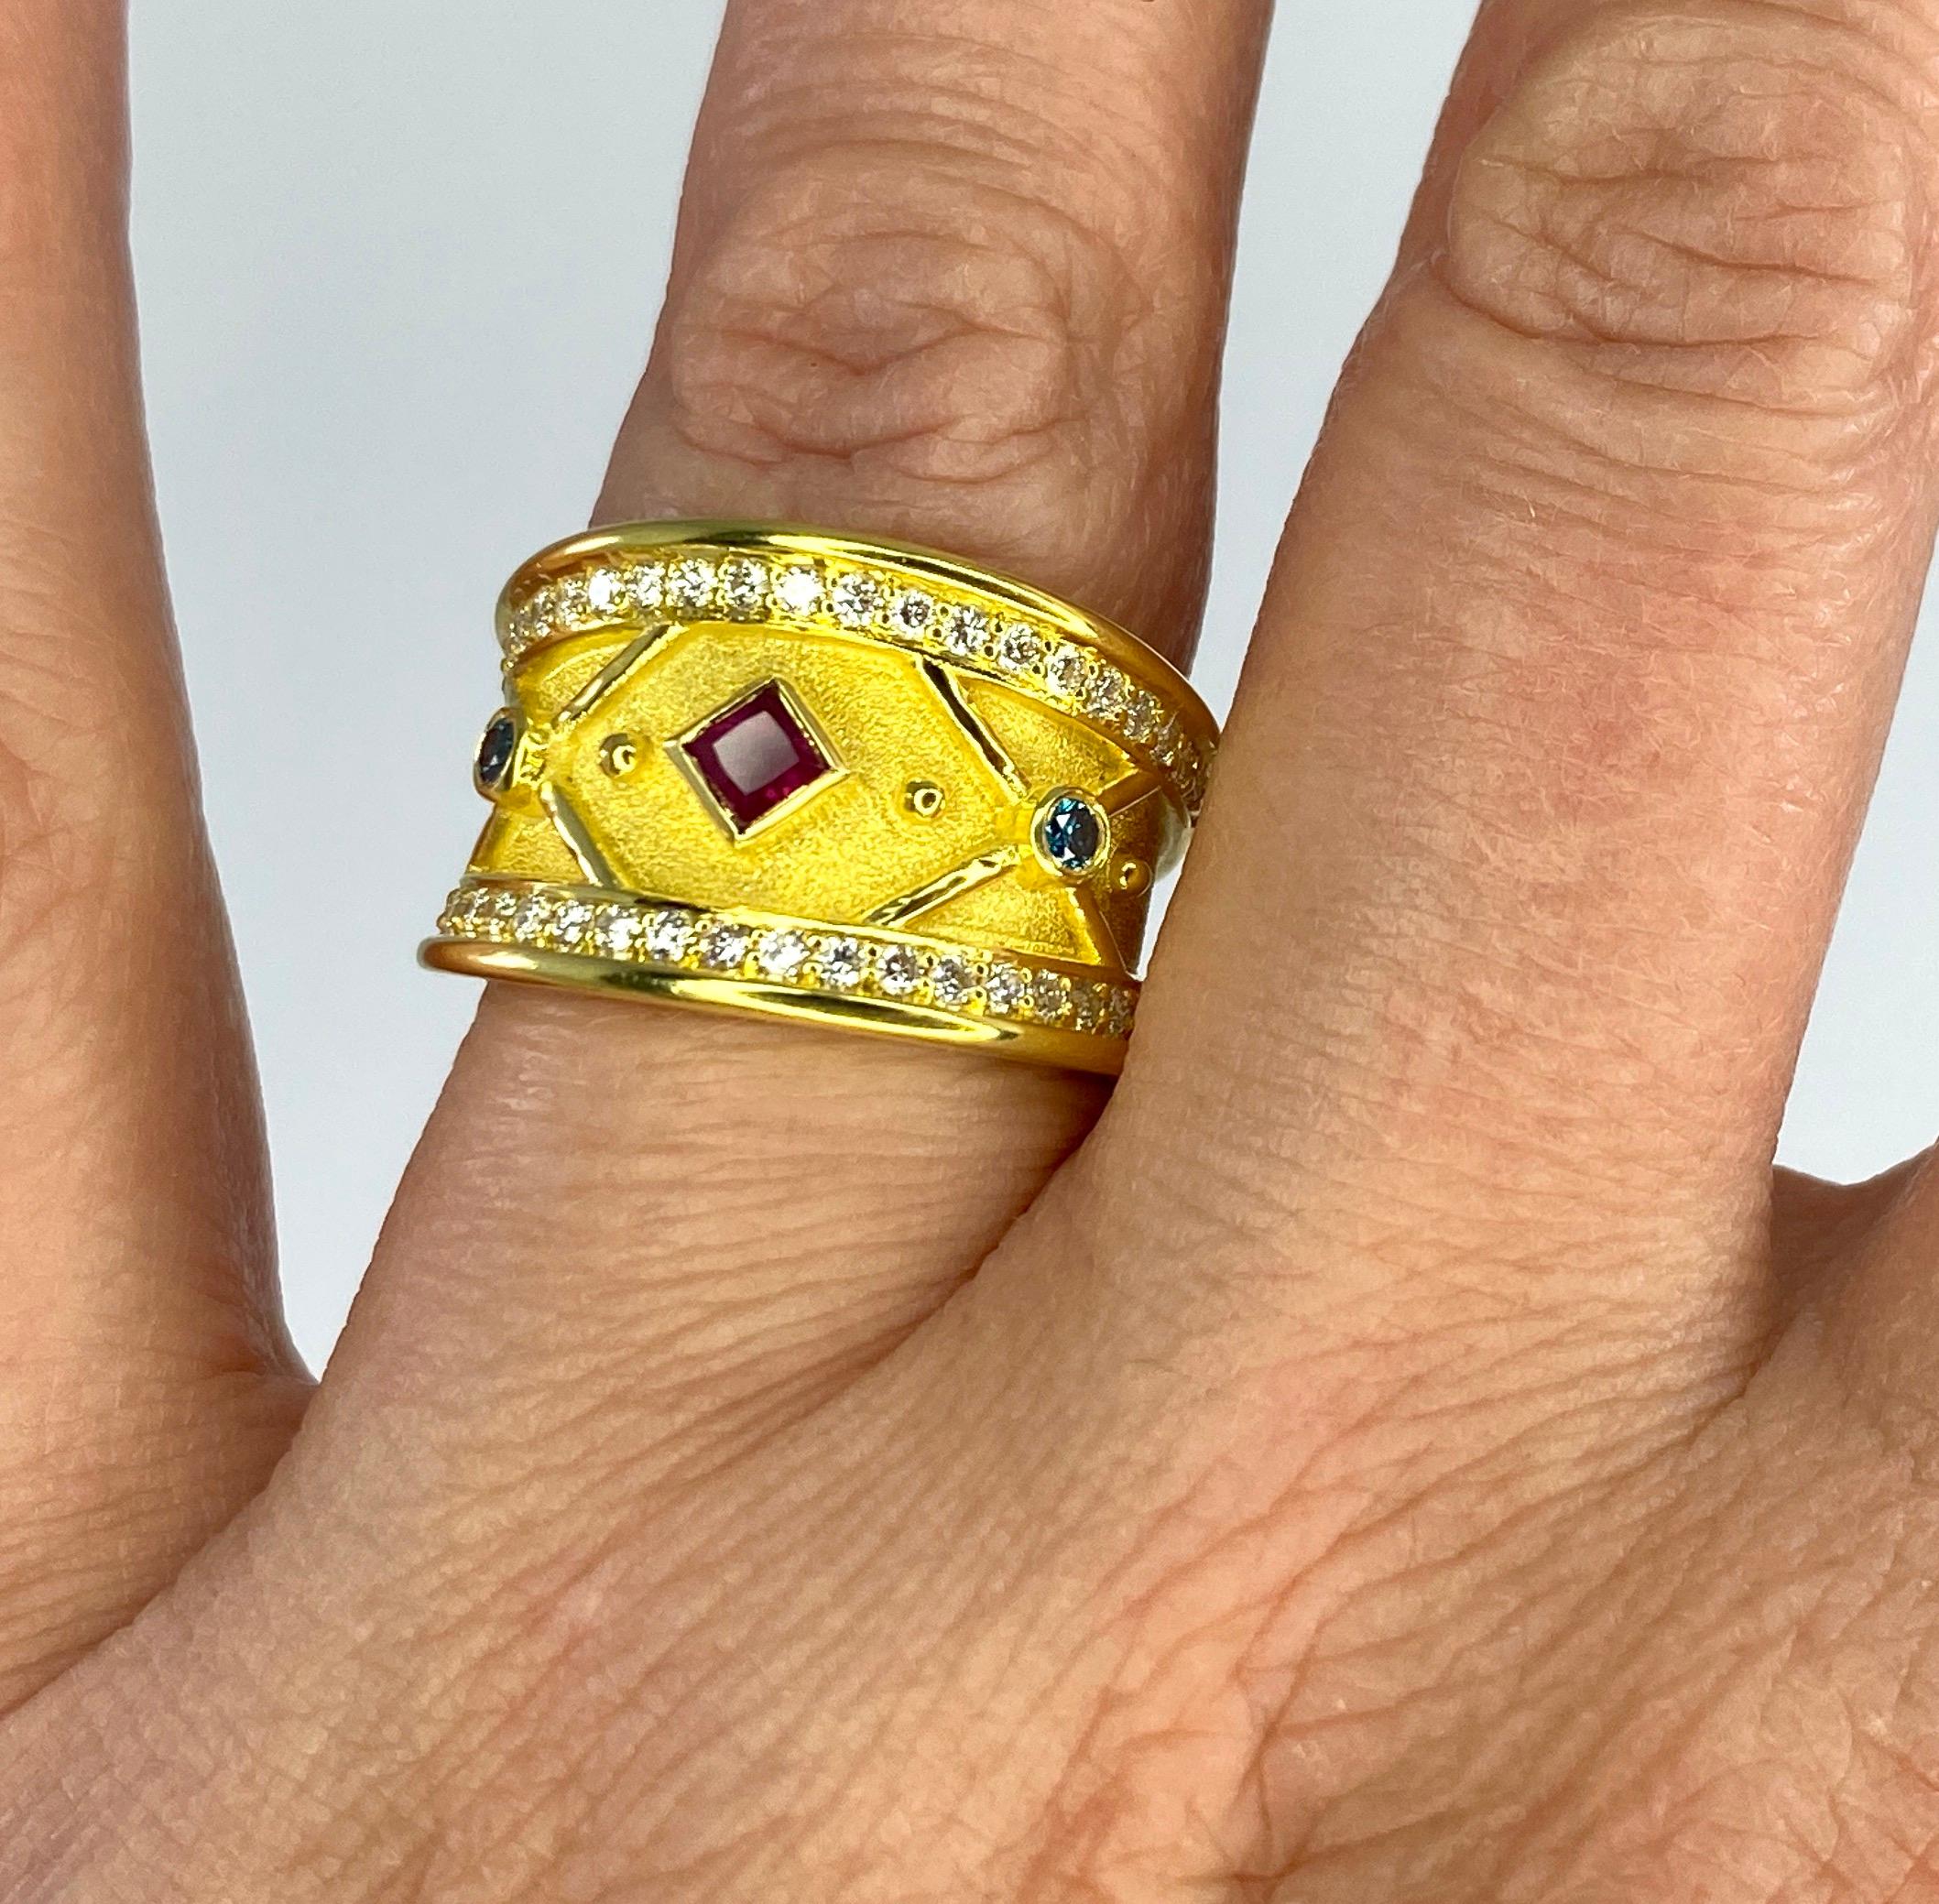 Dieser elegante Designerring von S.Georgios ist aus massivem 18 Karat Gelbgold handgefertigt. Der Ring ist mikroskopisch genau mit 18 Karat Gelbgold verziert und mit Drähten versehen, die auf dem Hintergrund von byzantinischem Samt liegen. In der